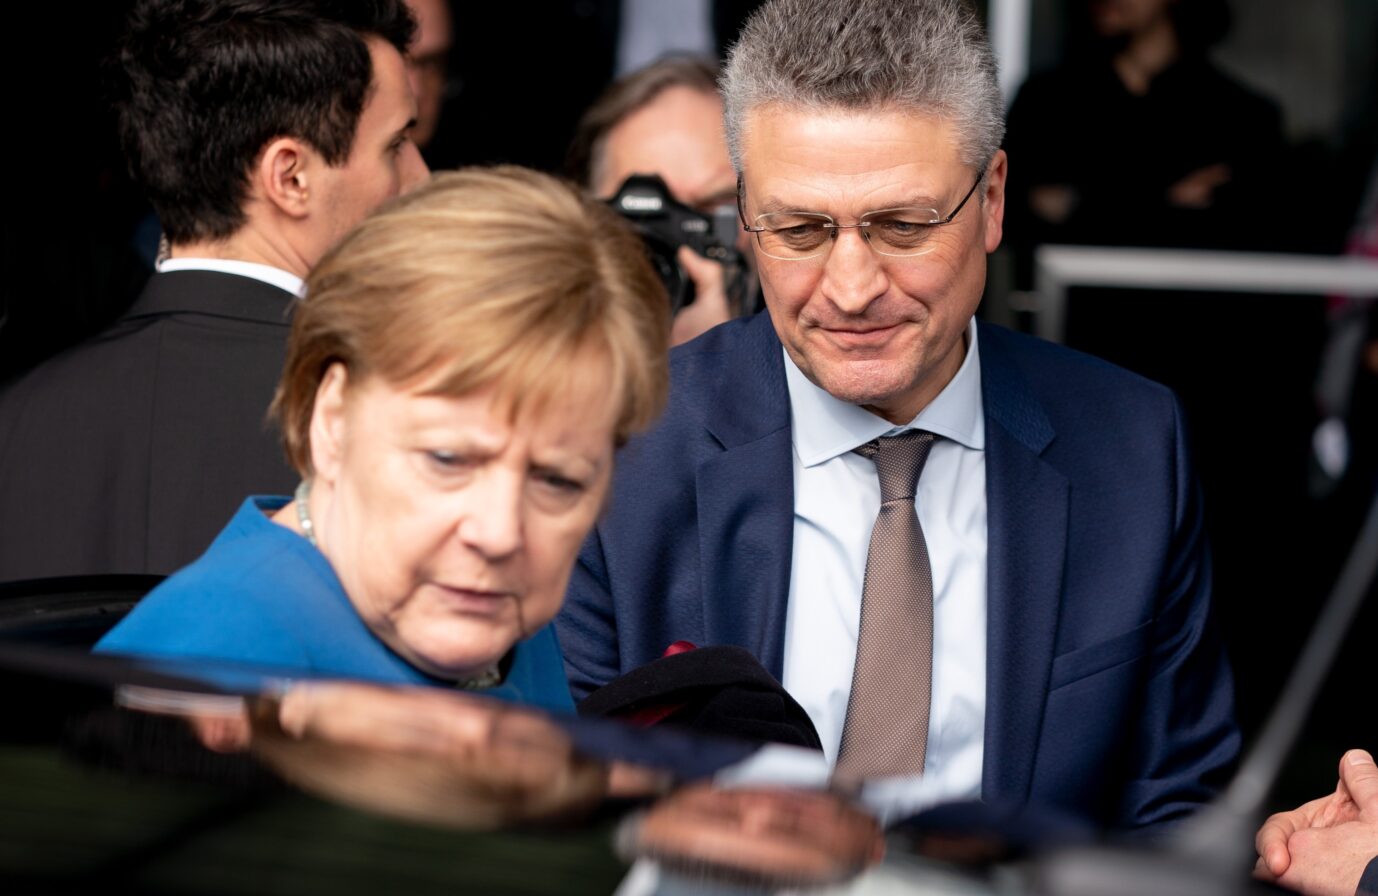 Die damalige Kanzlerin Angela Merkel (CDU) und der damalige RKI-Chef Lothar Wieler: Nicht evidenzbasierte Corona-Maßnahmen.